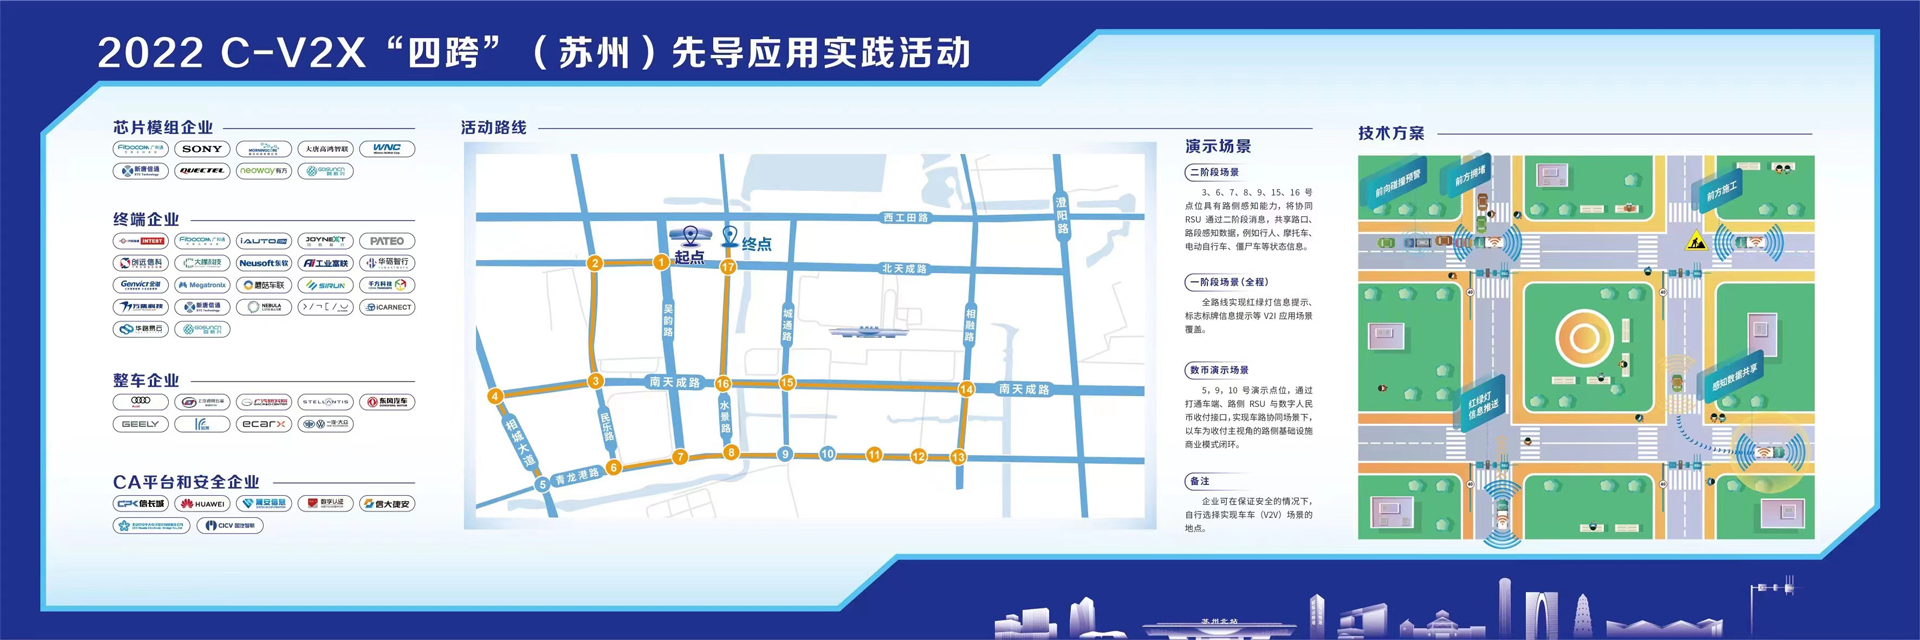 广通远驰亮相2022 C-V2X“四跨”（苏州）应用示范活动